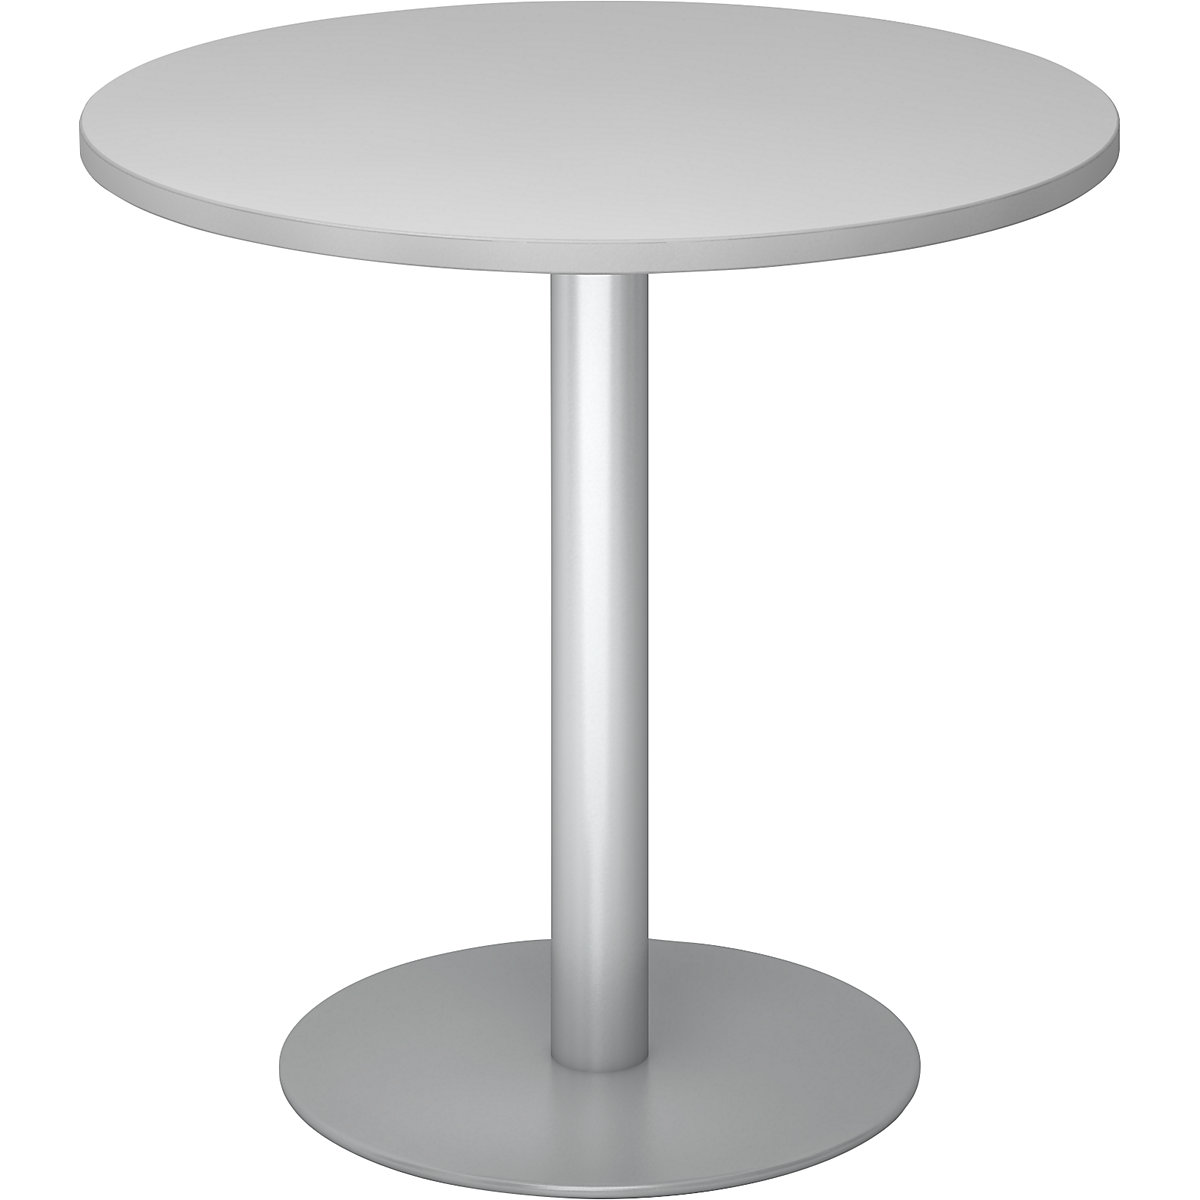 Tárgyalóasztal, Ø 800 mm, 755 mm magas, ezüst váz, világosszürke asztallap